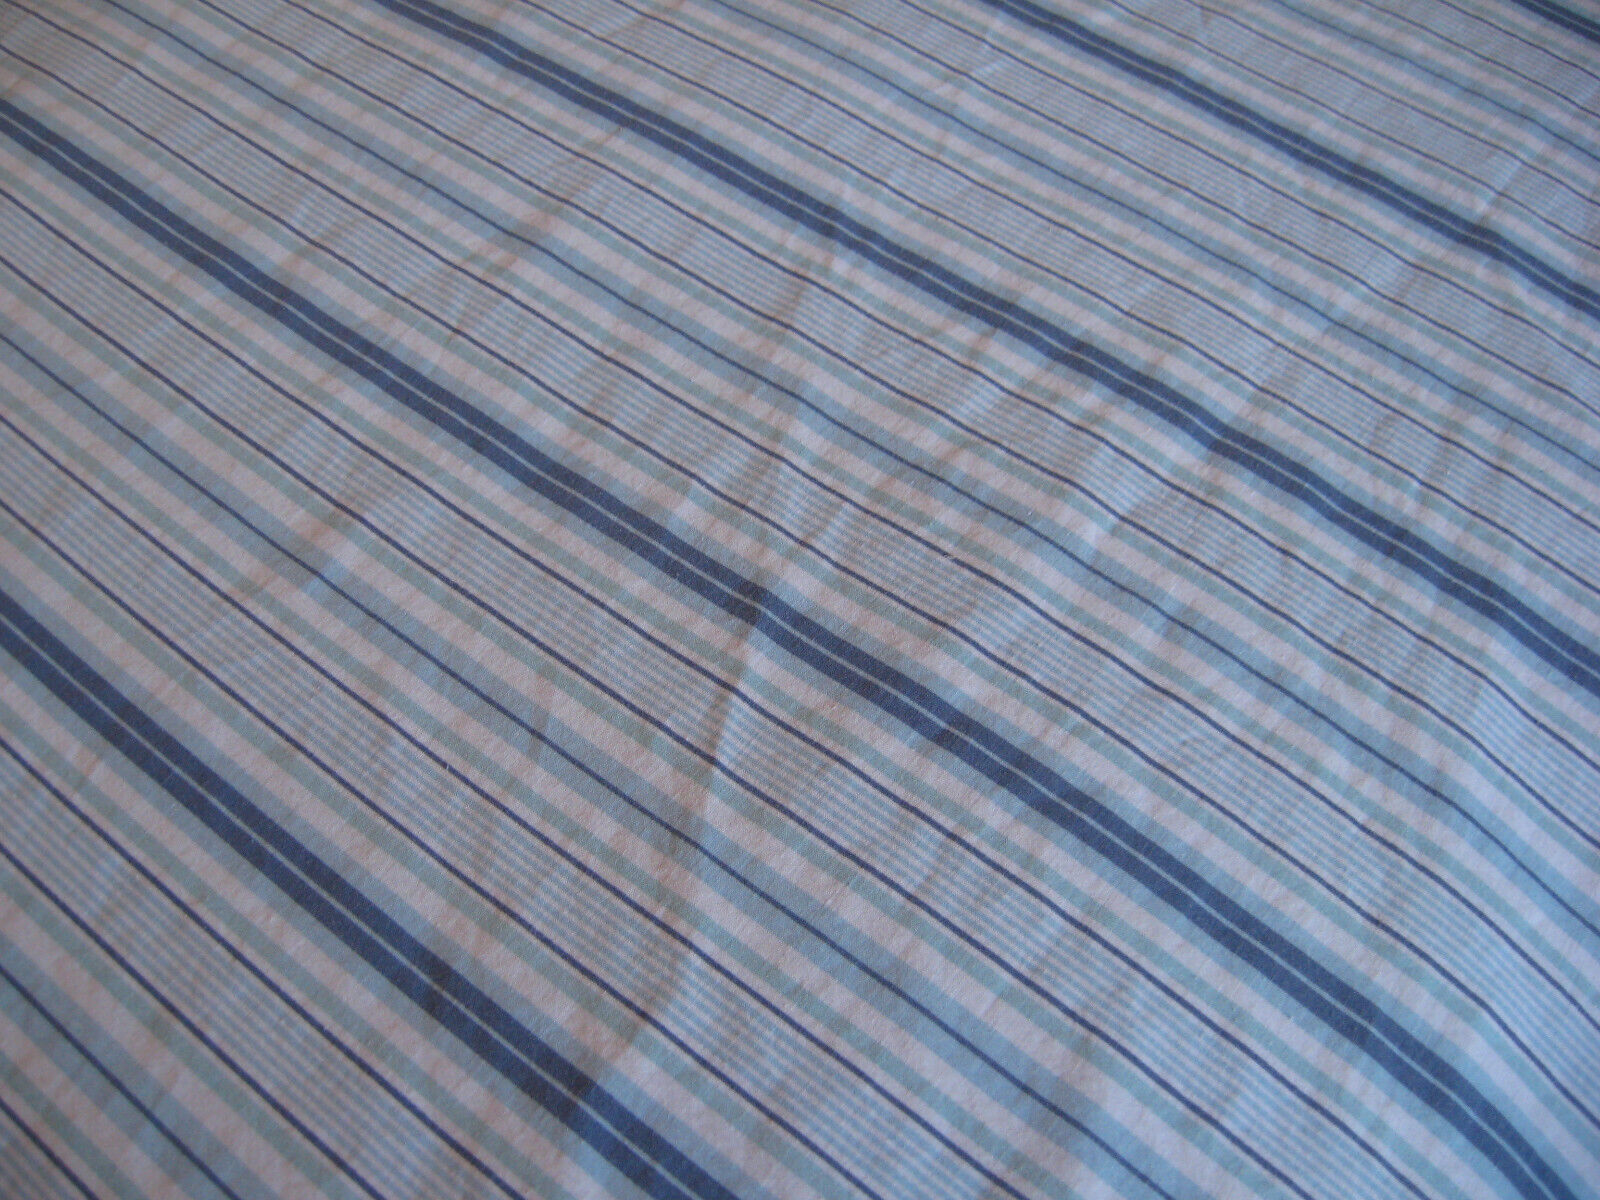 Walmart MAINSTAYS - Double FLAT - BLUE Stripes pattern [#522]